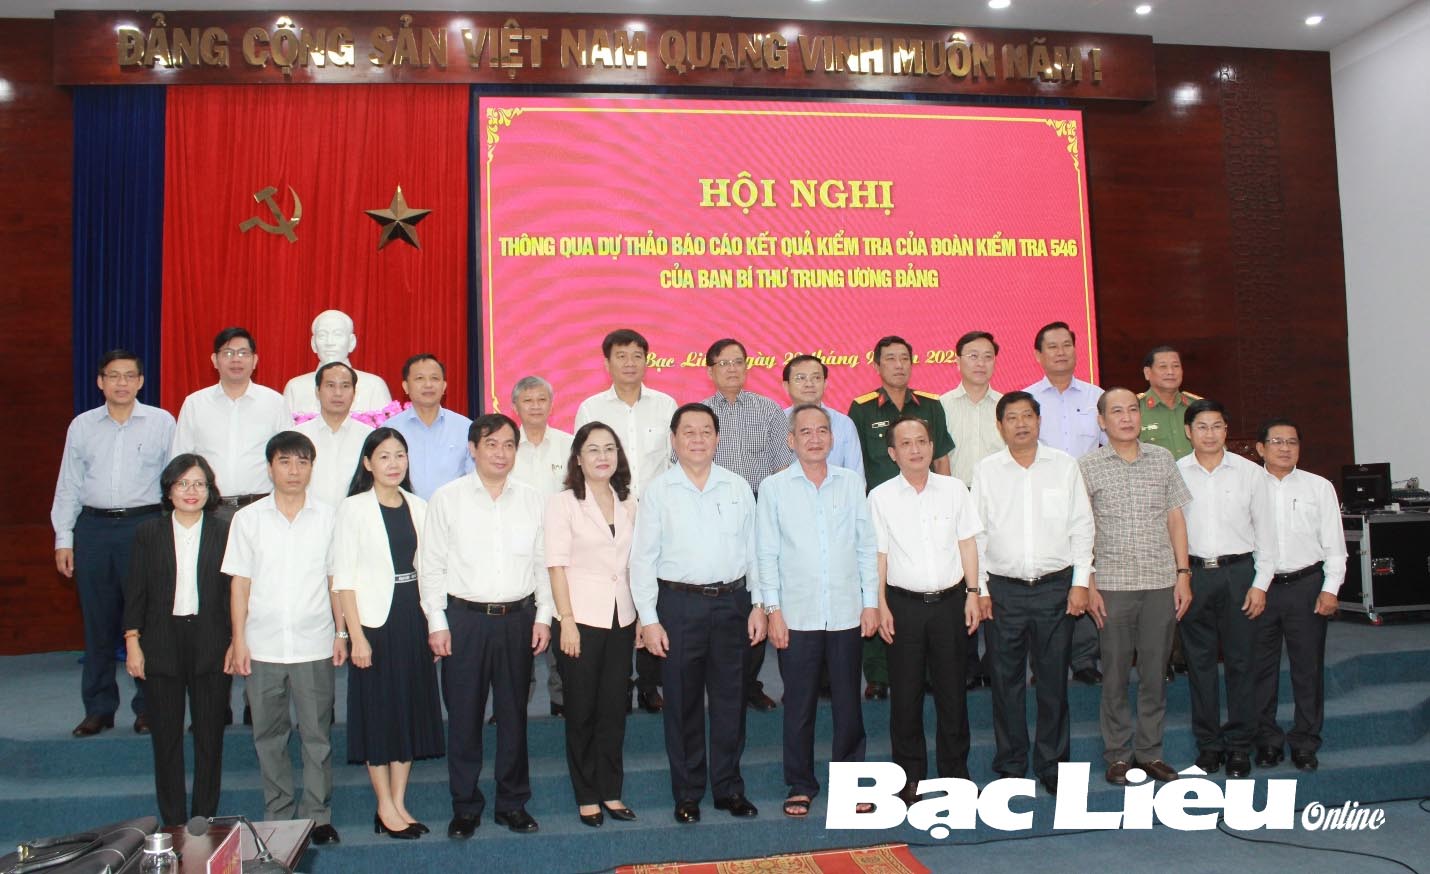 Hội nghị thông qua dự thảo kết quả kiểm tra của Đoàn kiểm tra 546 của Ban Bí thư Trung ương tại Bạc Liêu